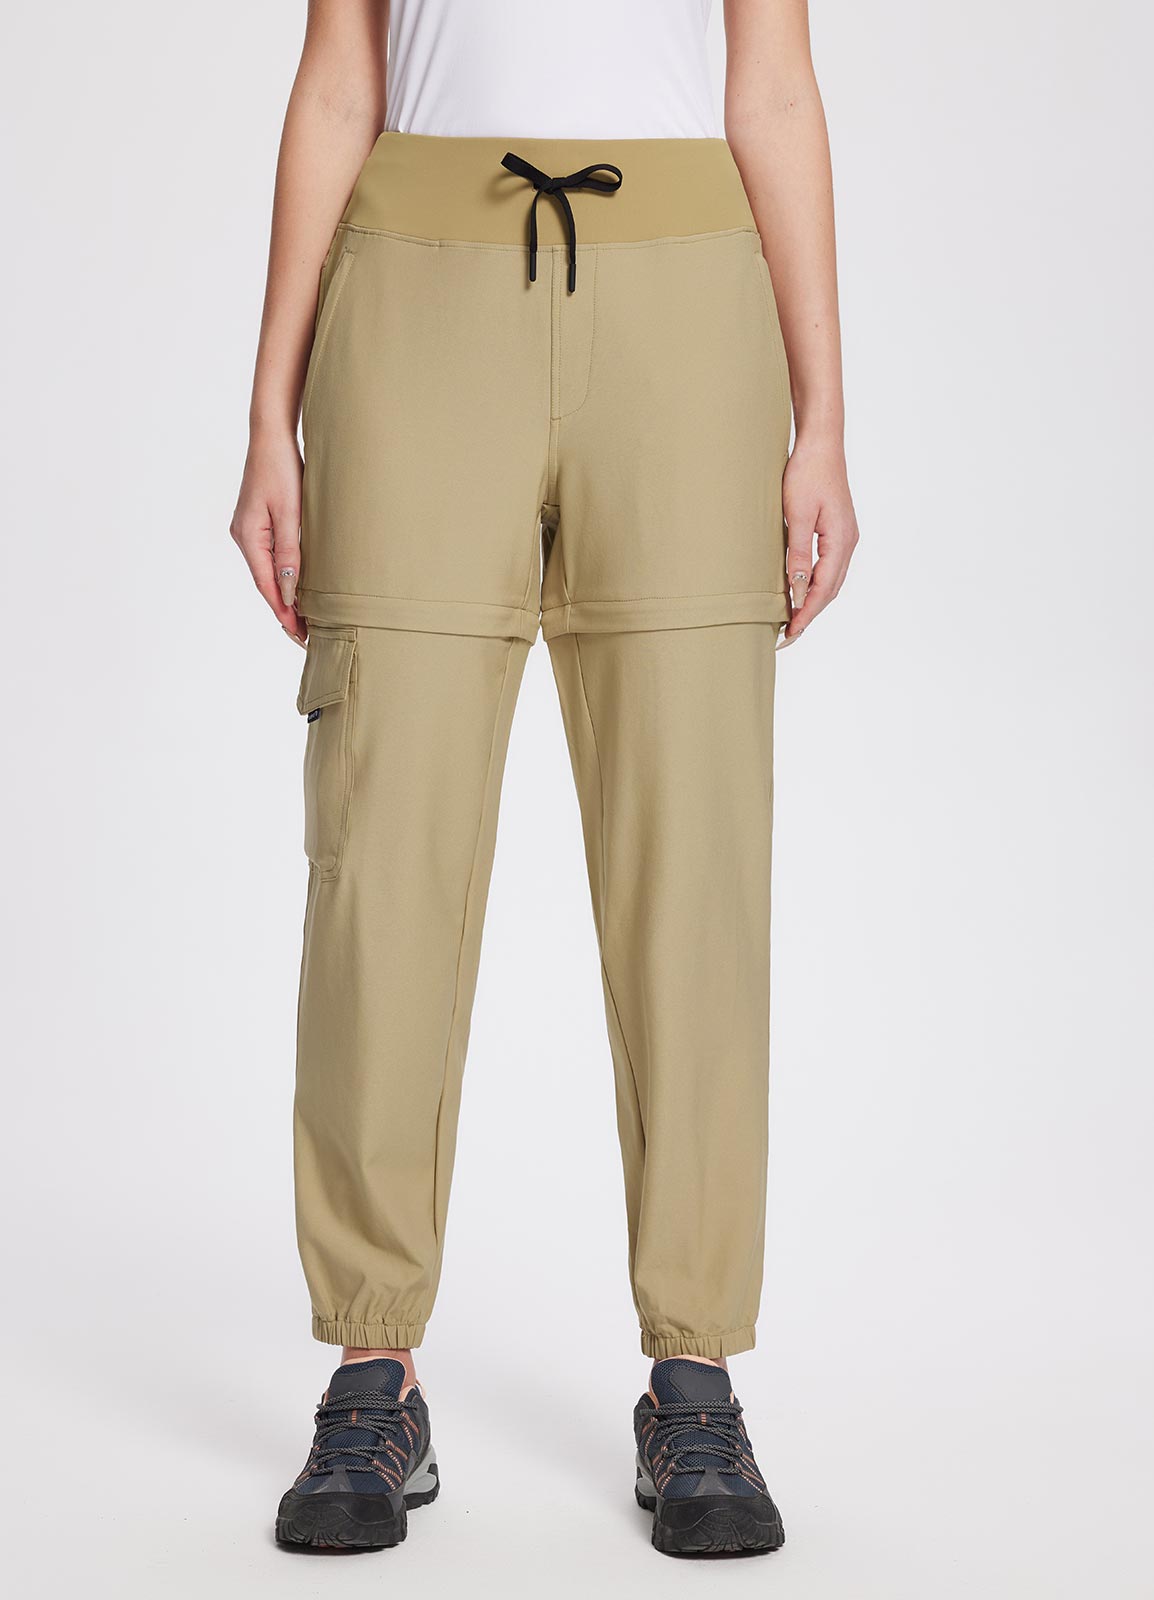 BALEAF Women's Hiking Cargo Pants Outdoor Lightweight Capris Water  Resistant UPF 50 Zipper Pockets Navy Blue Size XL - All4Hiking.com